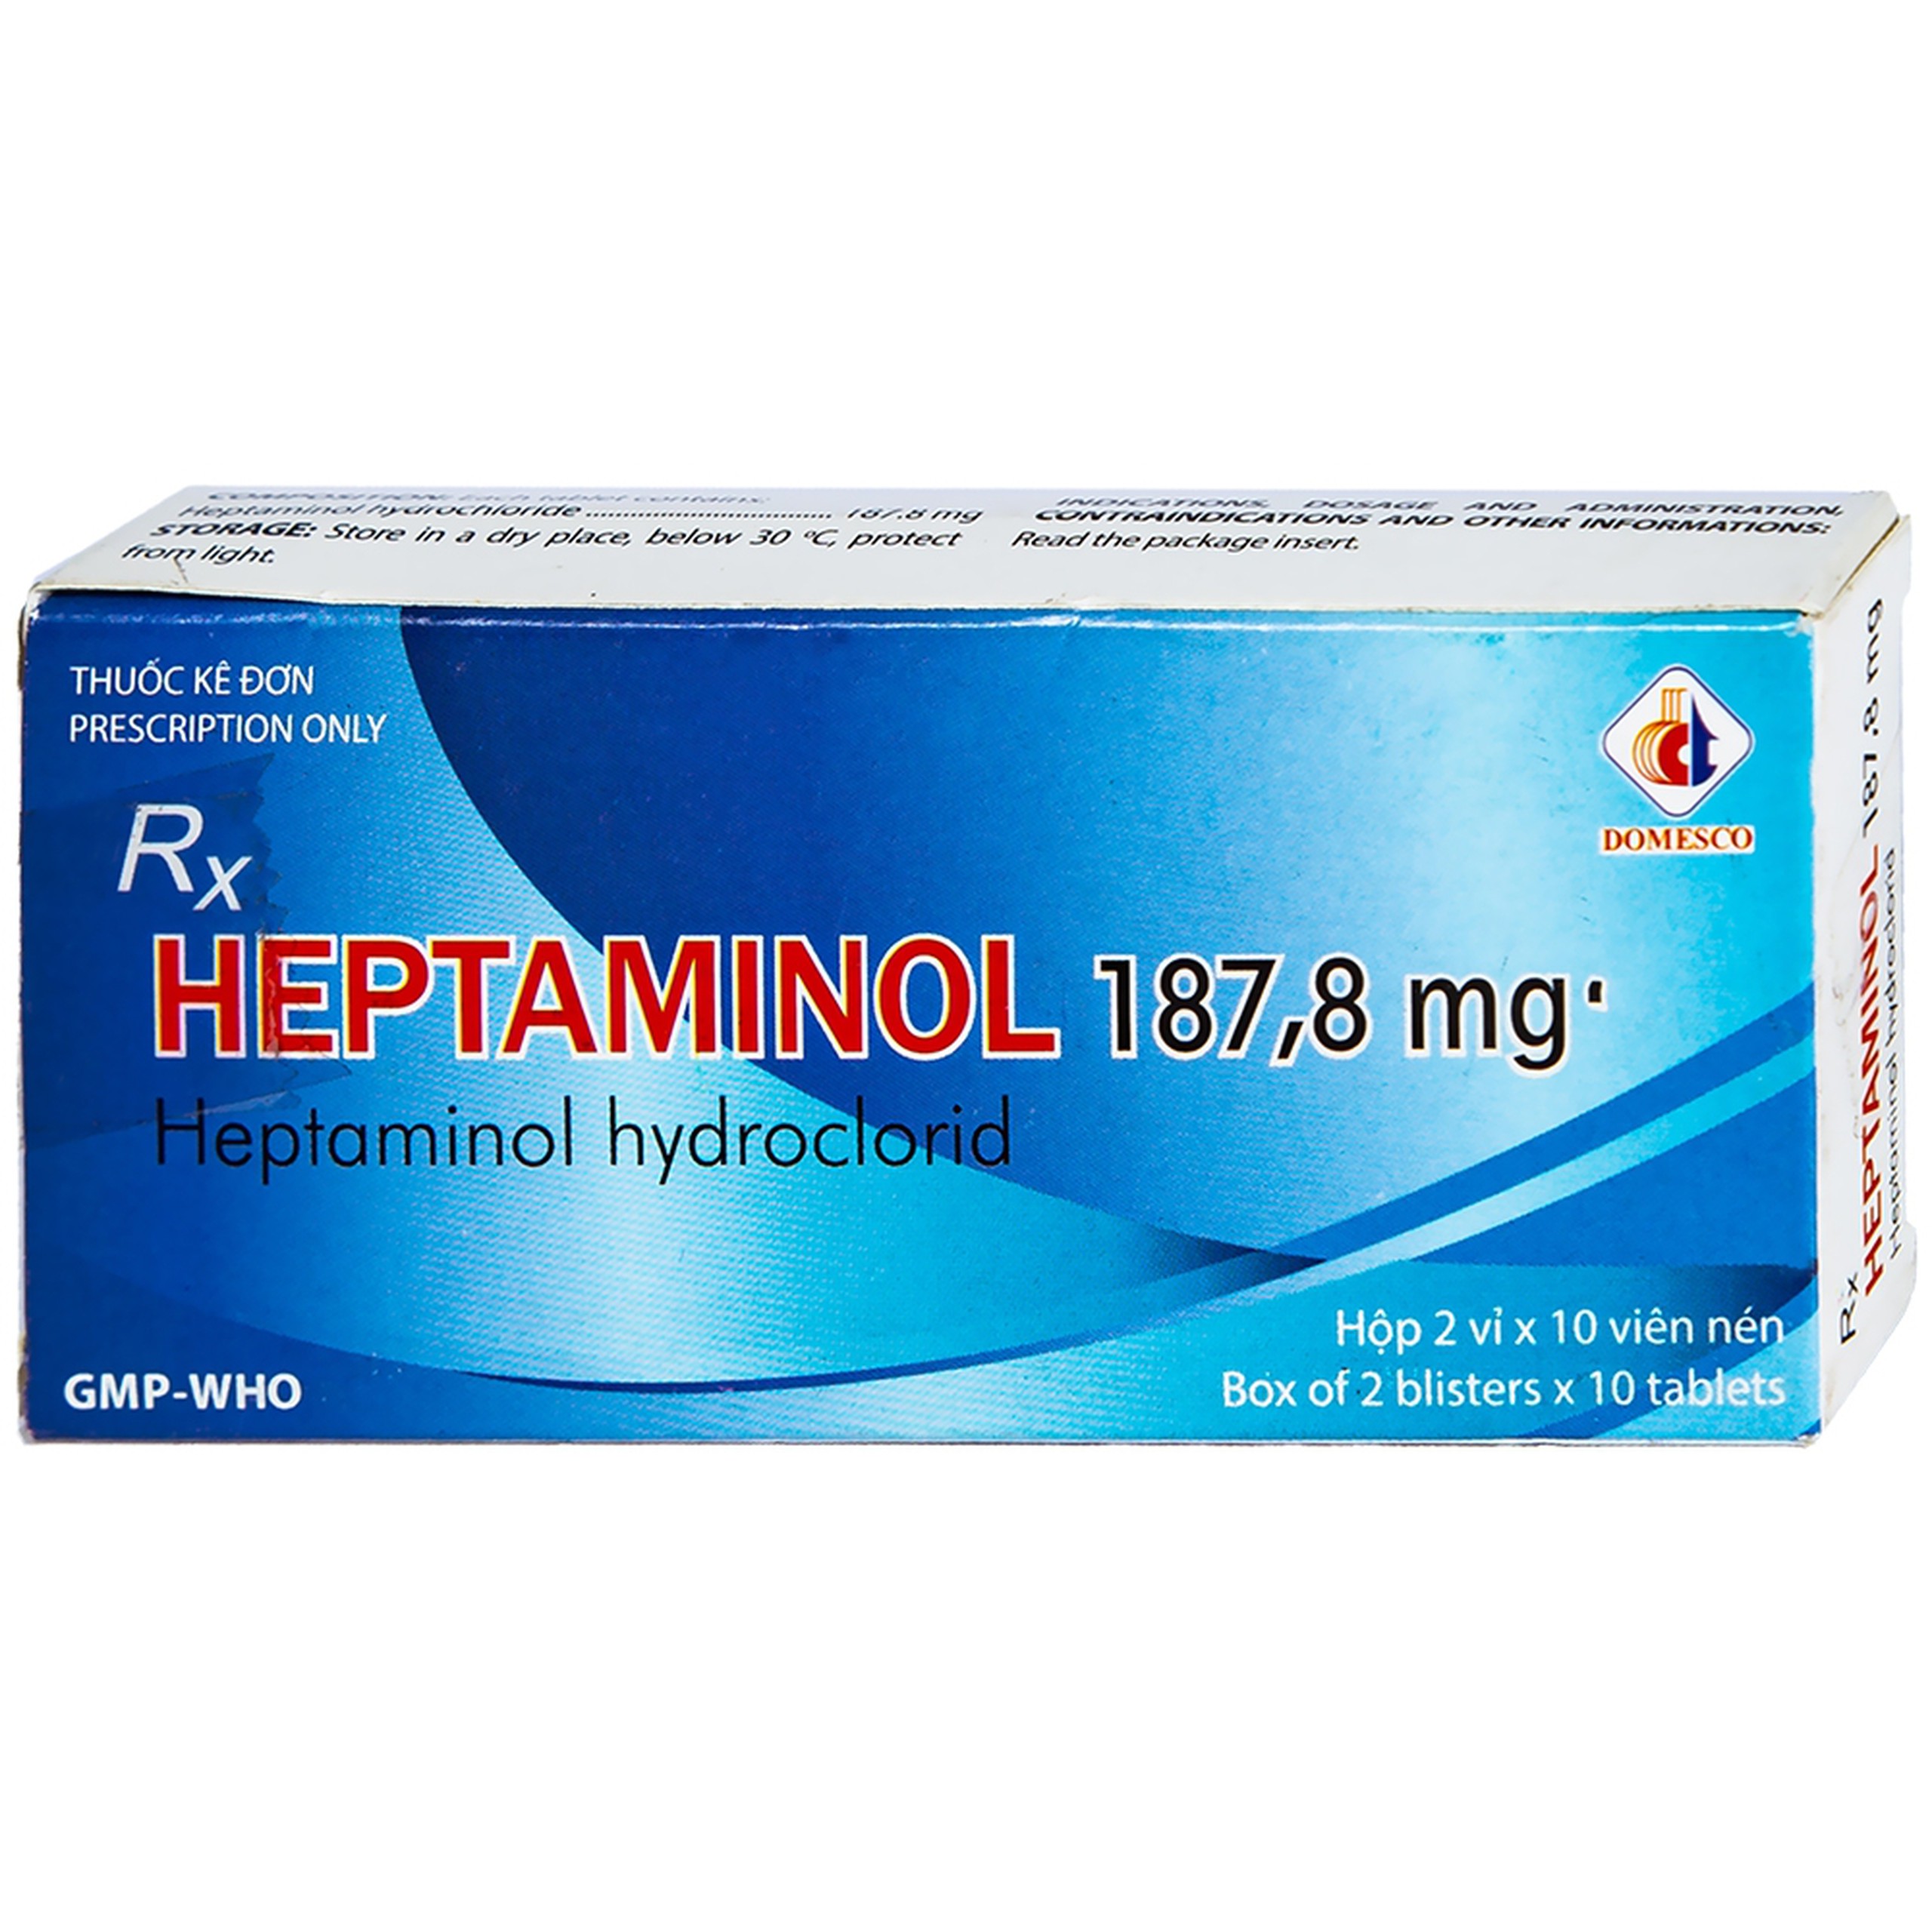 Thuốc Heptaminol 187,8mg điều trị triệu chứng trong hạ huyết áp tư thế (2 vỉ x 10 viên)